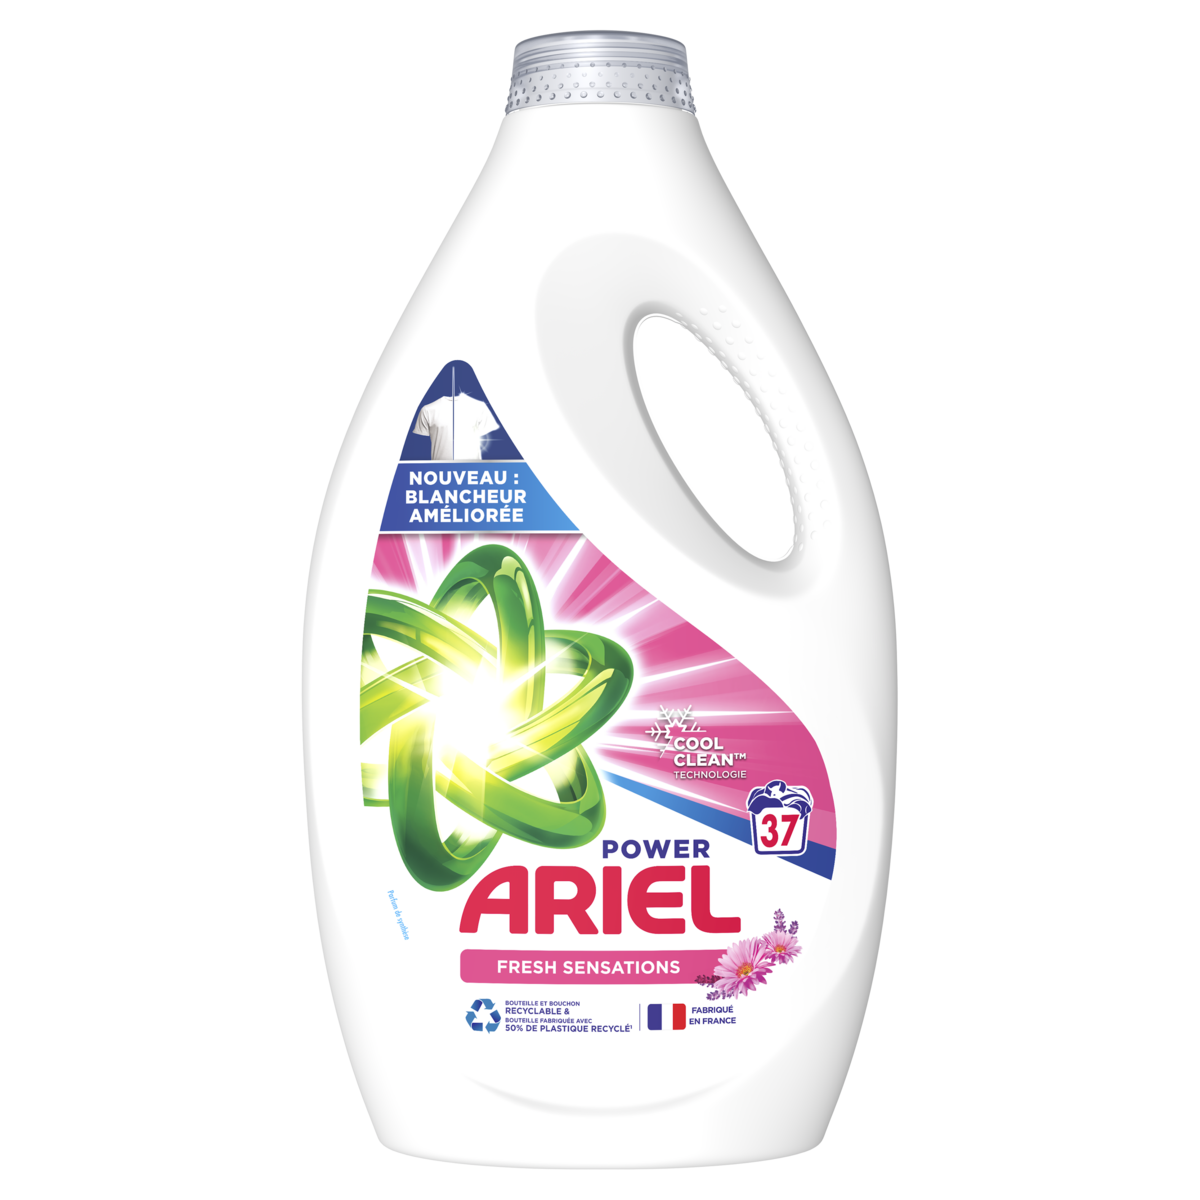 ARIEL Power Lessive liquide fresh sensations 37 lavages 1.85l